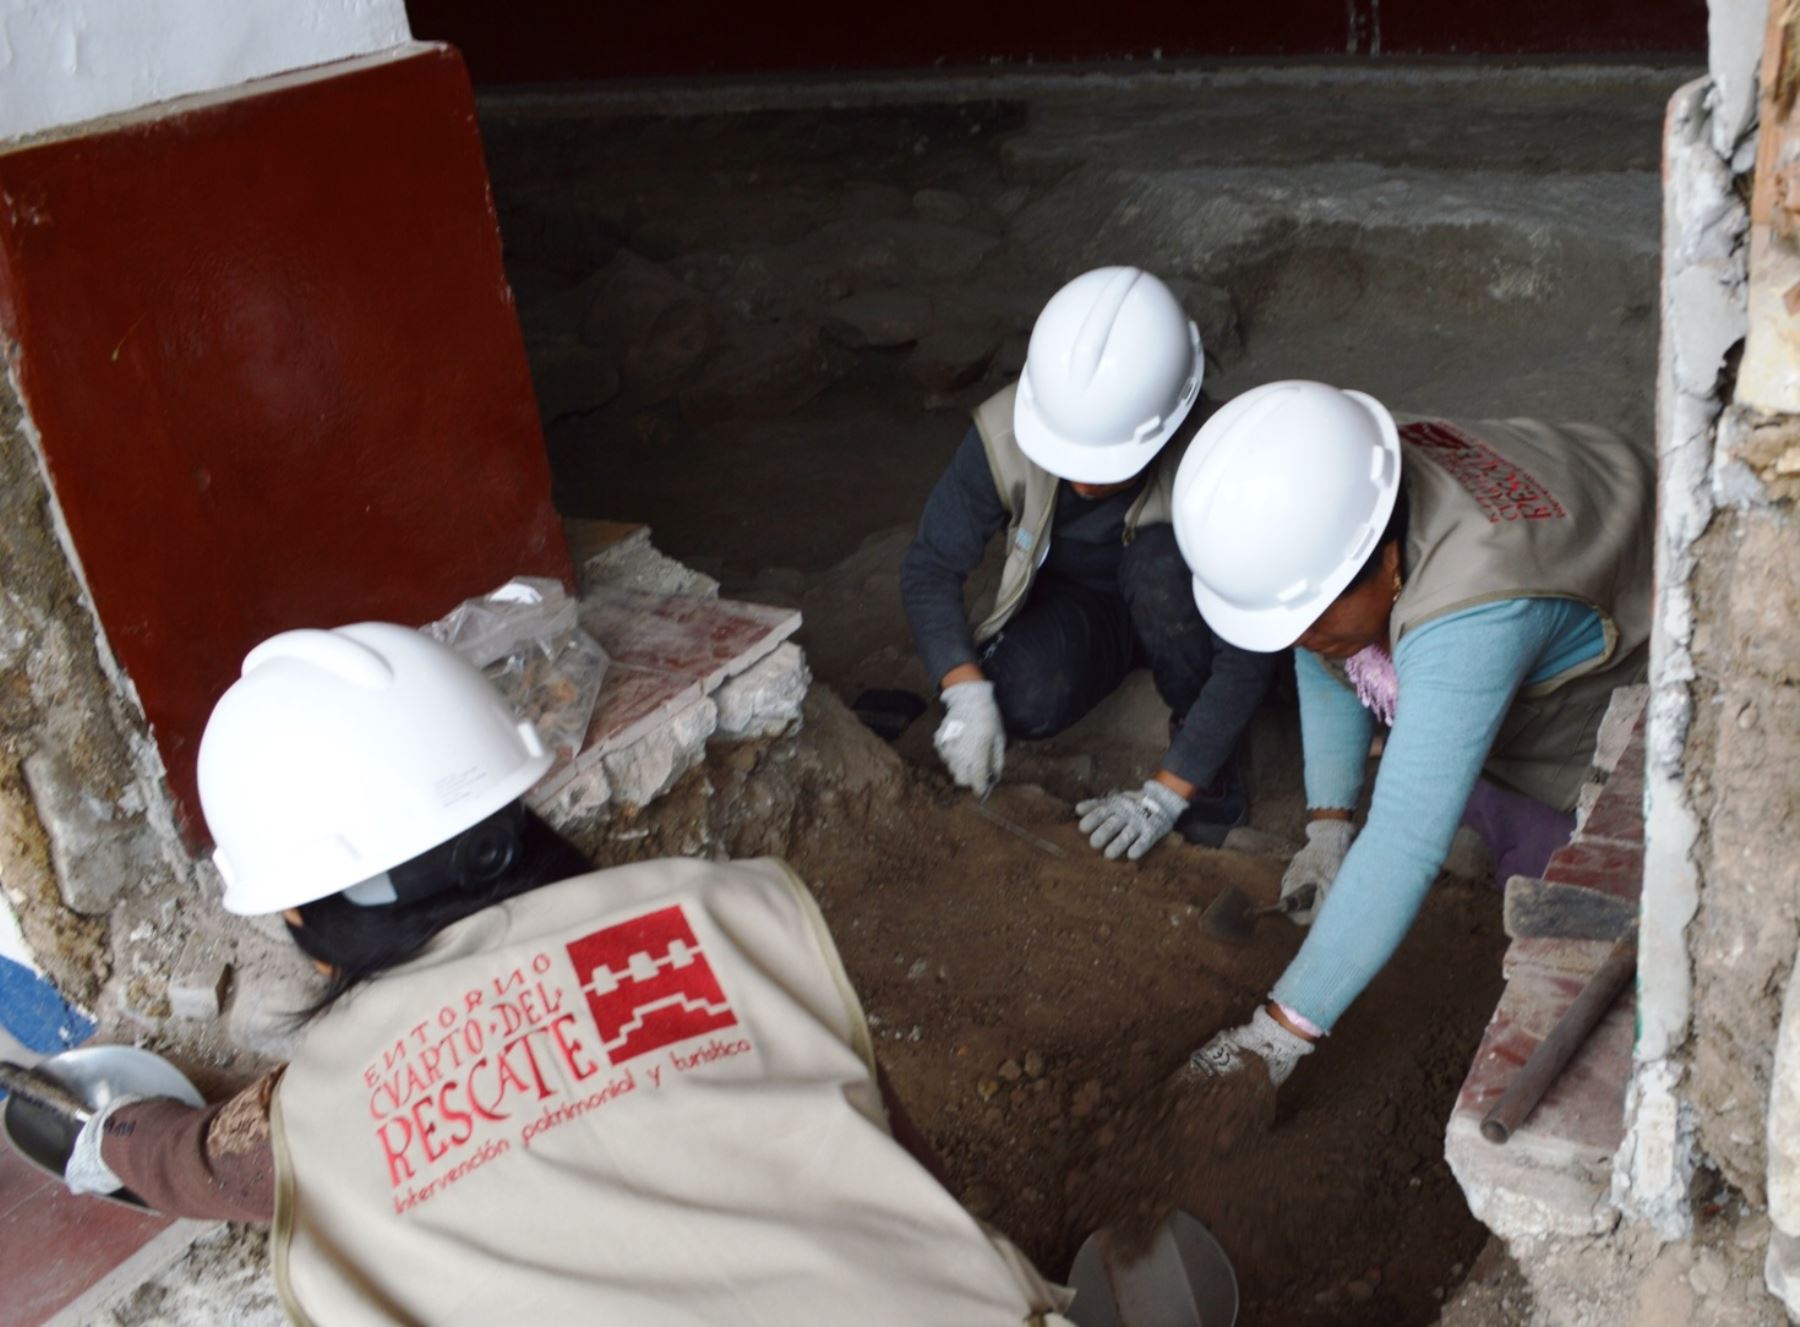 Un equipo de arqueólogos halló las primeras evidencias de una ciudadela inca en el entorno del Cuarto del Rescate, monumento histórico ubicado en la ciudad de Cajamarca. Foto: Eduard Lozano